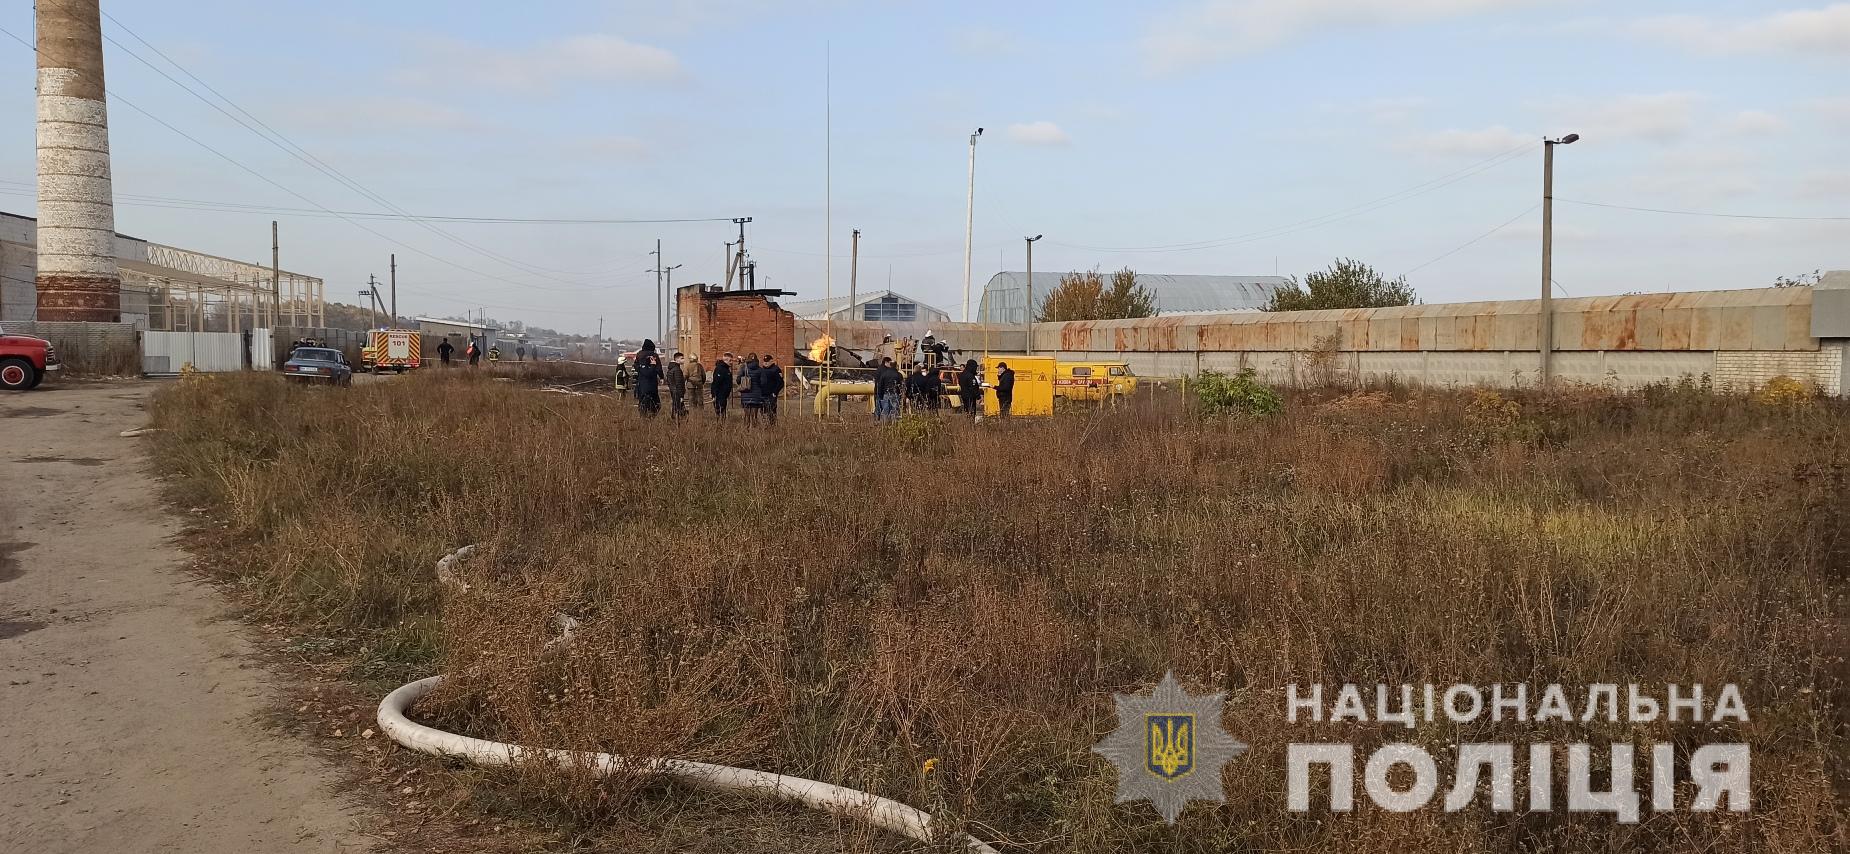 Неподалік Харкова стався вибух на газопереробній станції, є загиблі